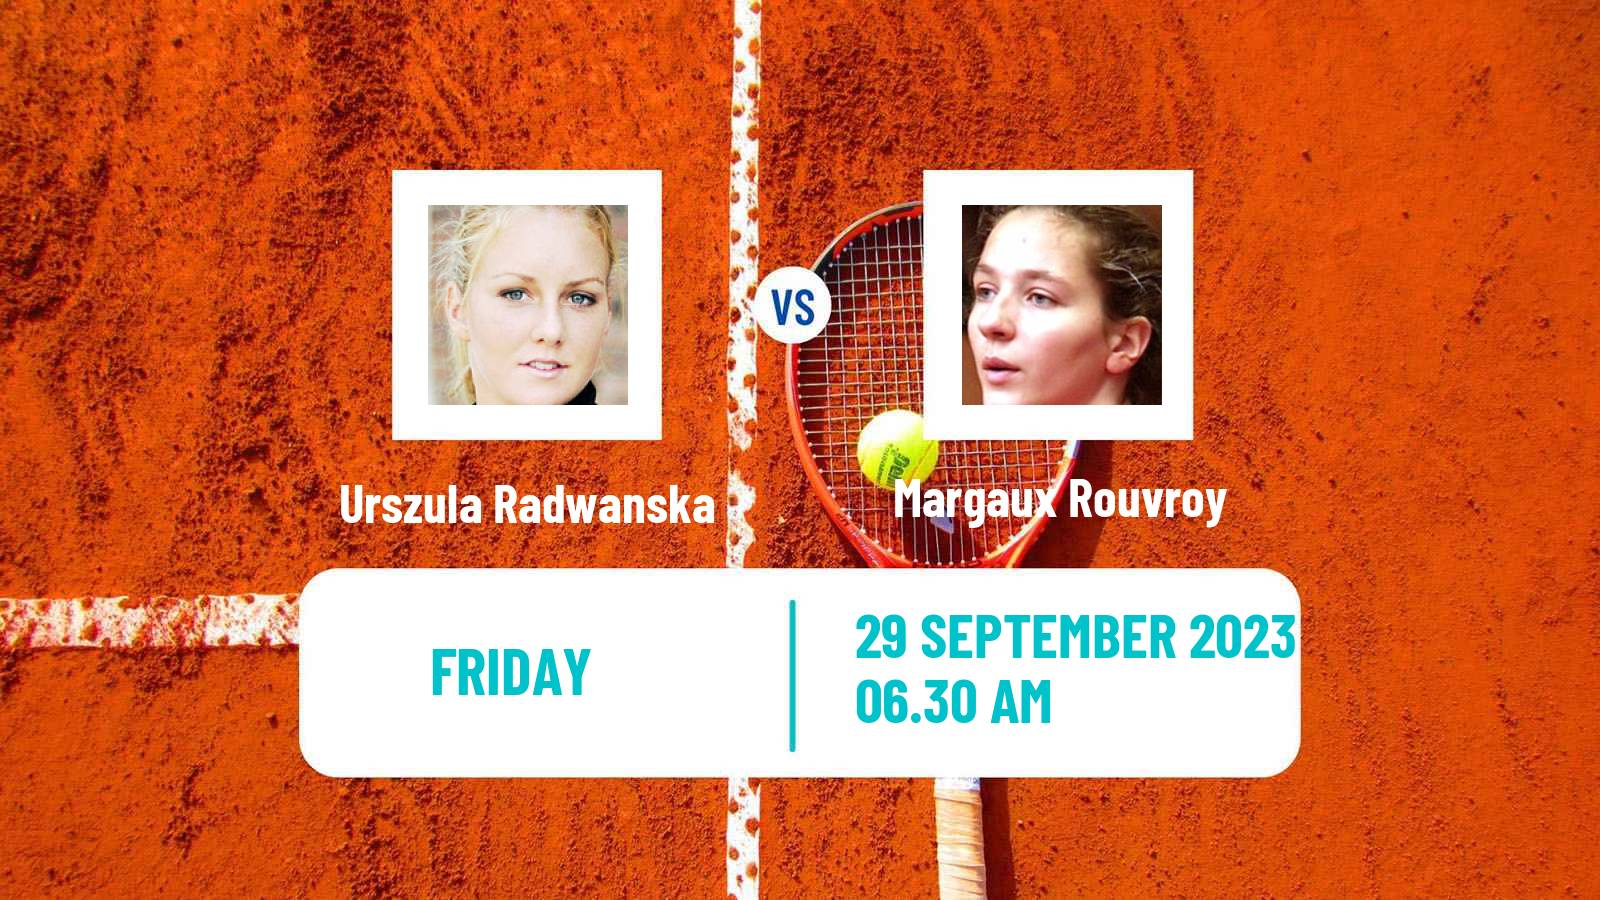 Tennis ITF W25 Santarem Women Urszula Radwanska - Margaux Rouvroy